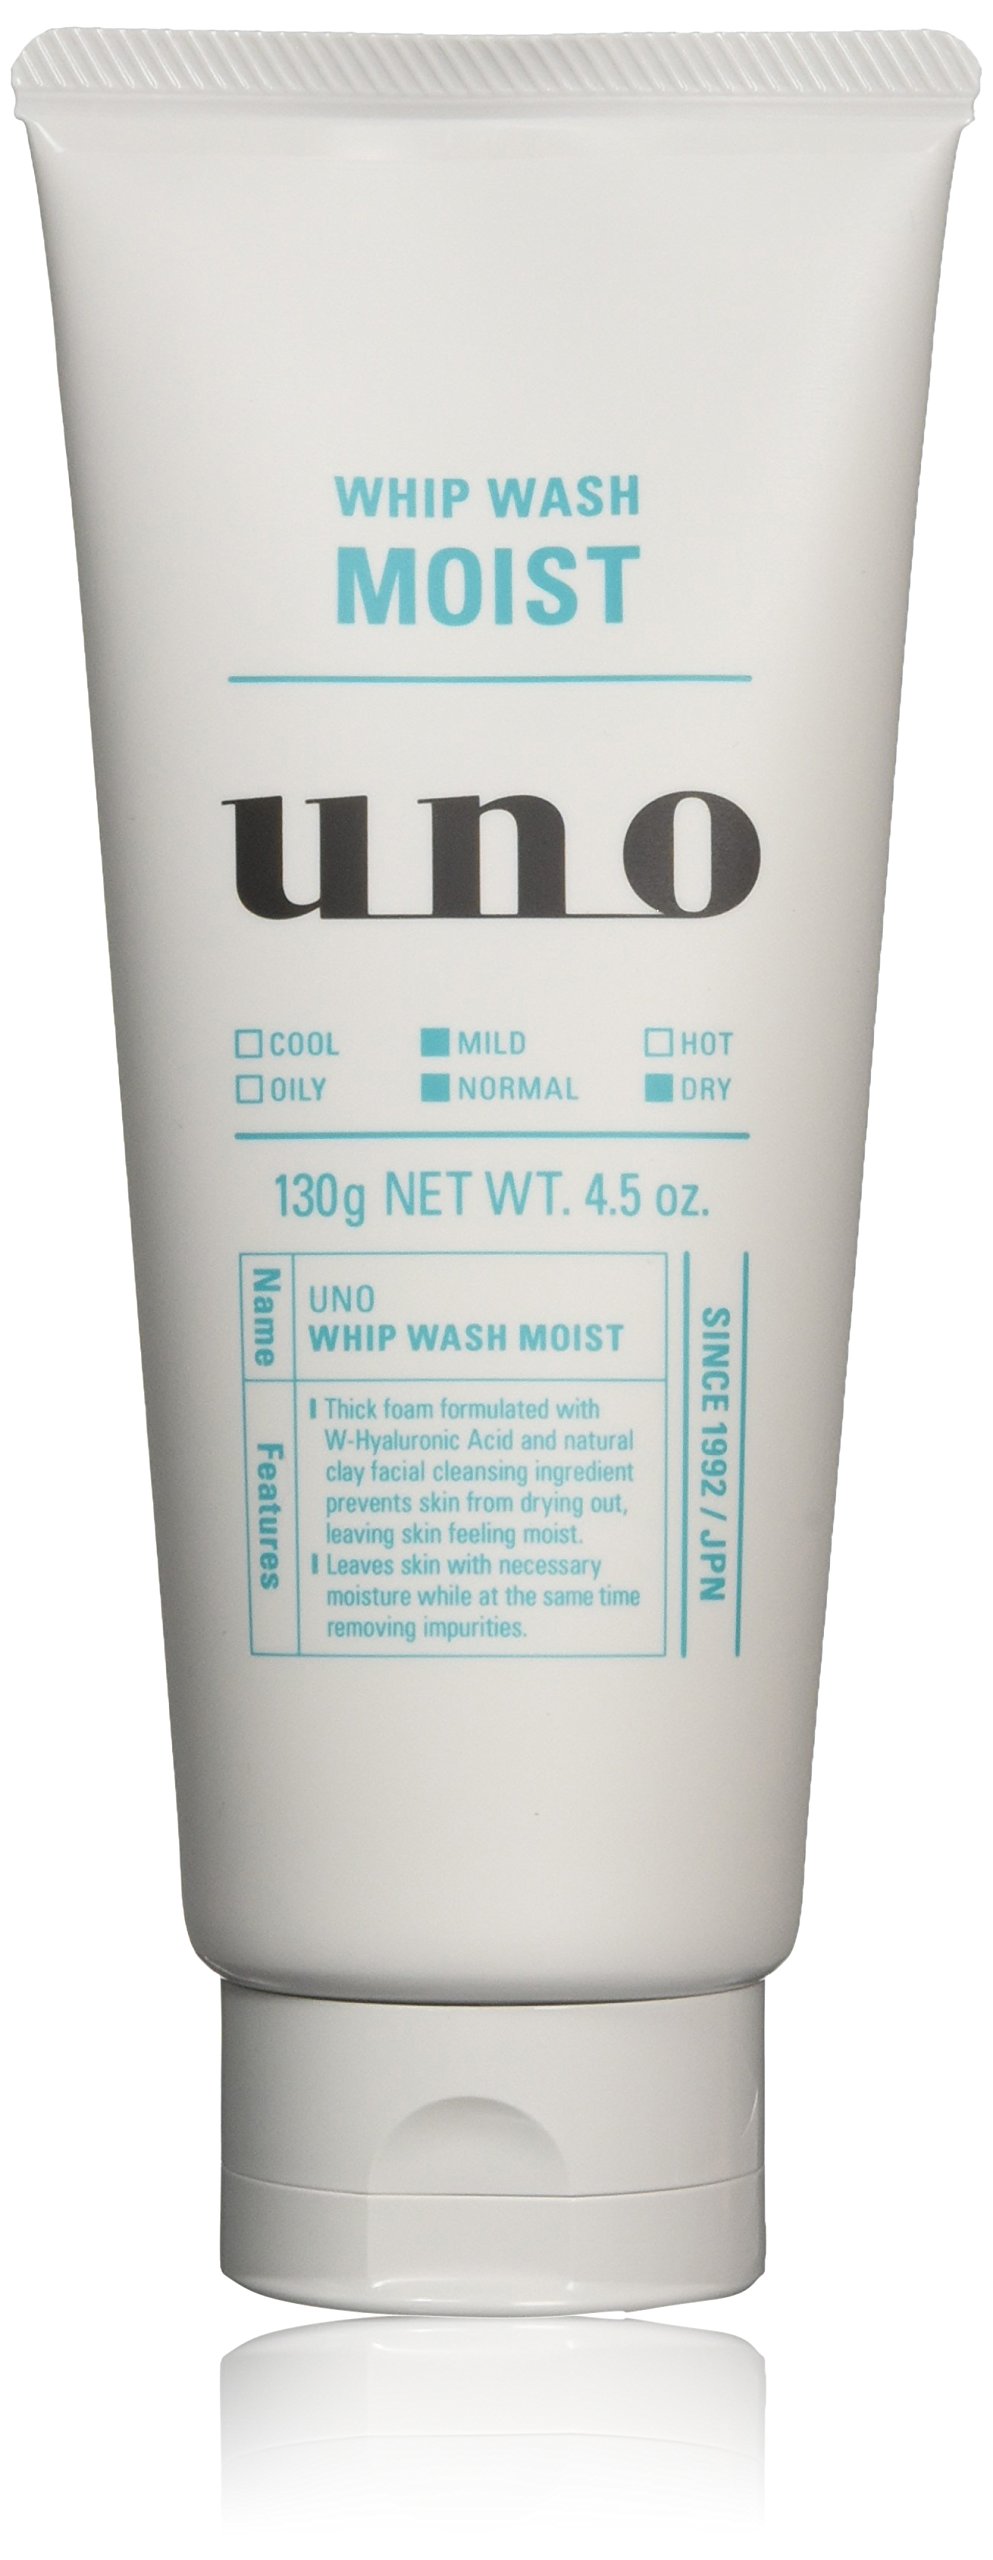 Shiseido Uno Whip Wash Moist Face Wash 130g